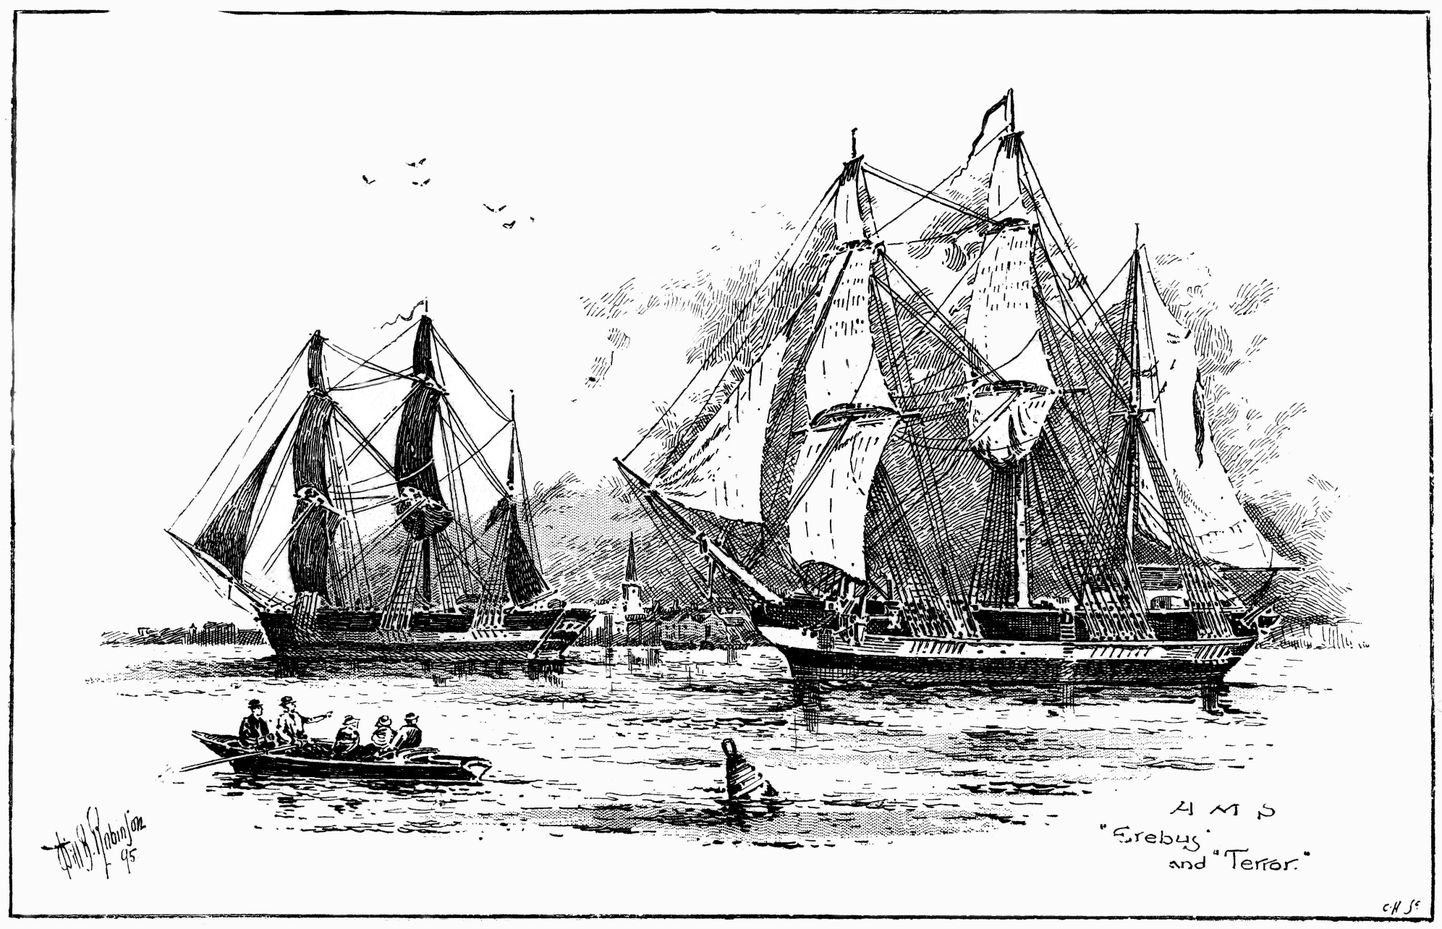 Joonistus viitseadmiral Franklini juhitud ekspeditsiooni kuulunud kahest laevast Terrorist ja Erebusest.